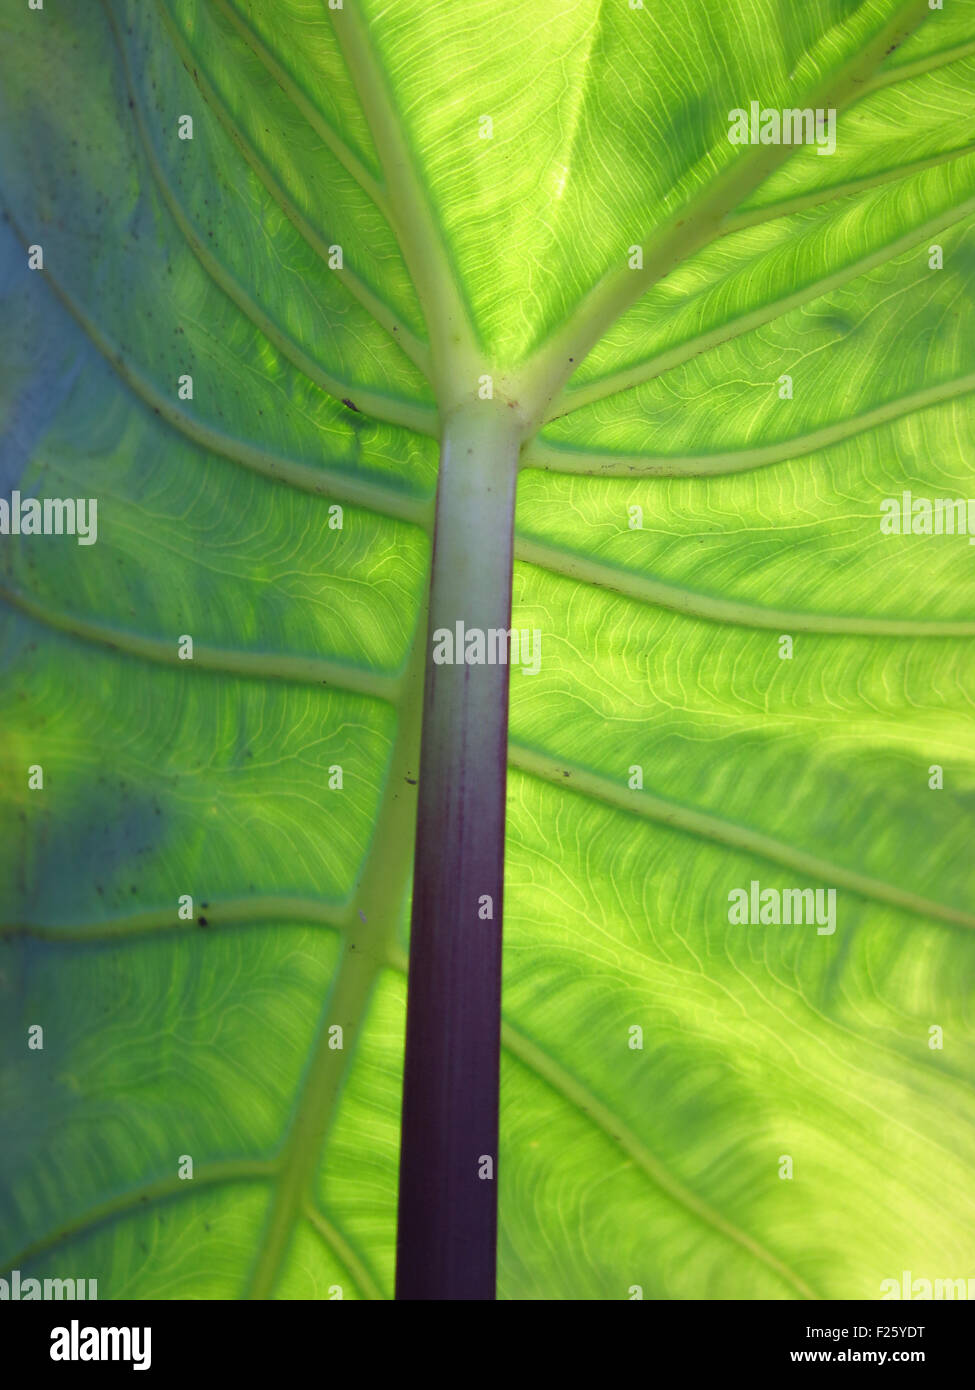 Einen detaillierten Überblick über das Blatt eine riesige tropische Pflanze Blattstruktur aus den unten Stockfoto